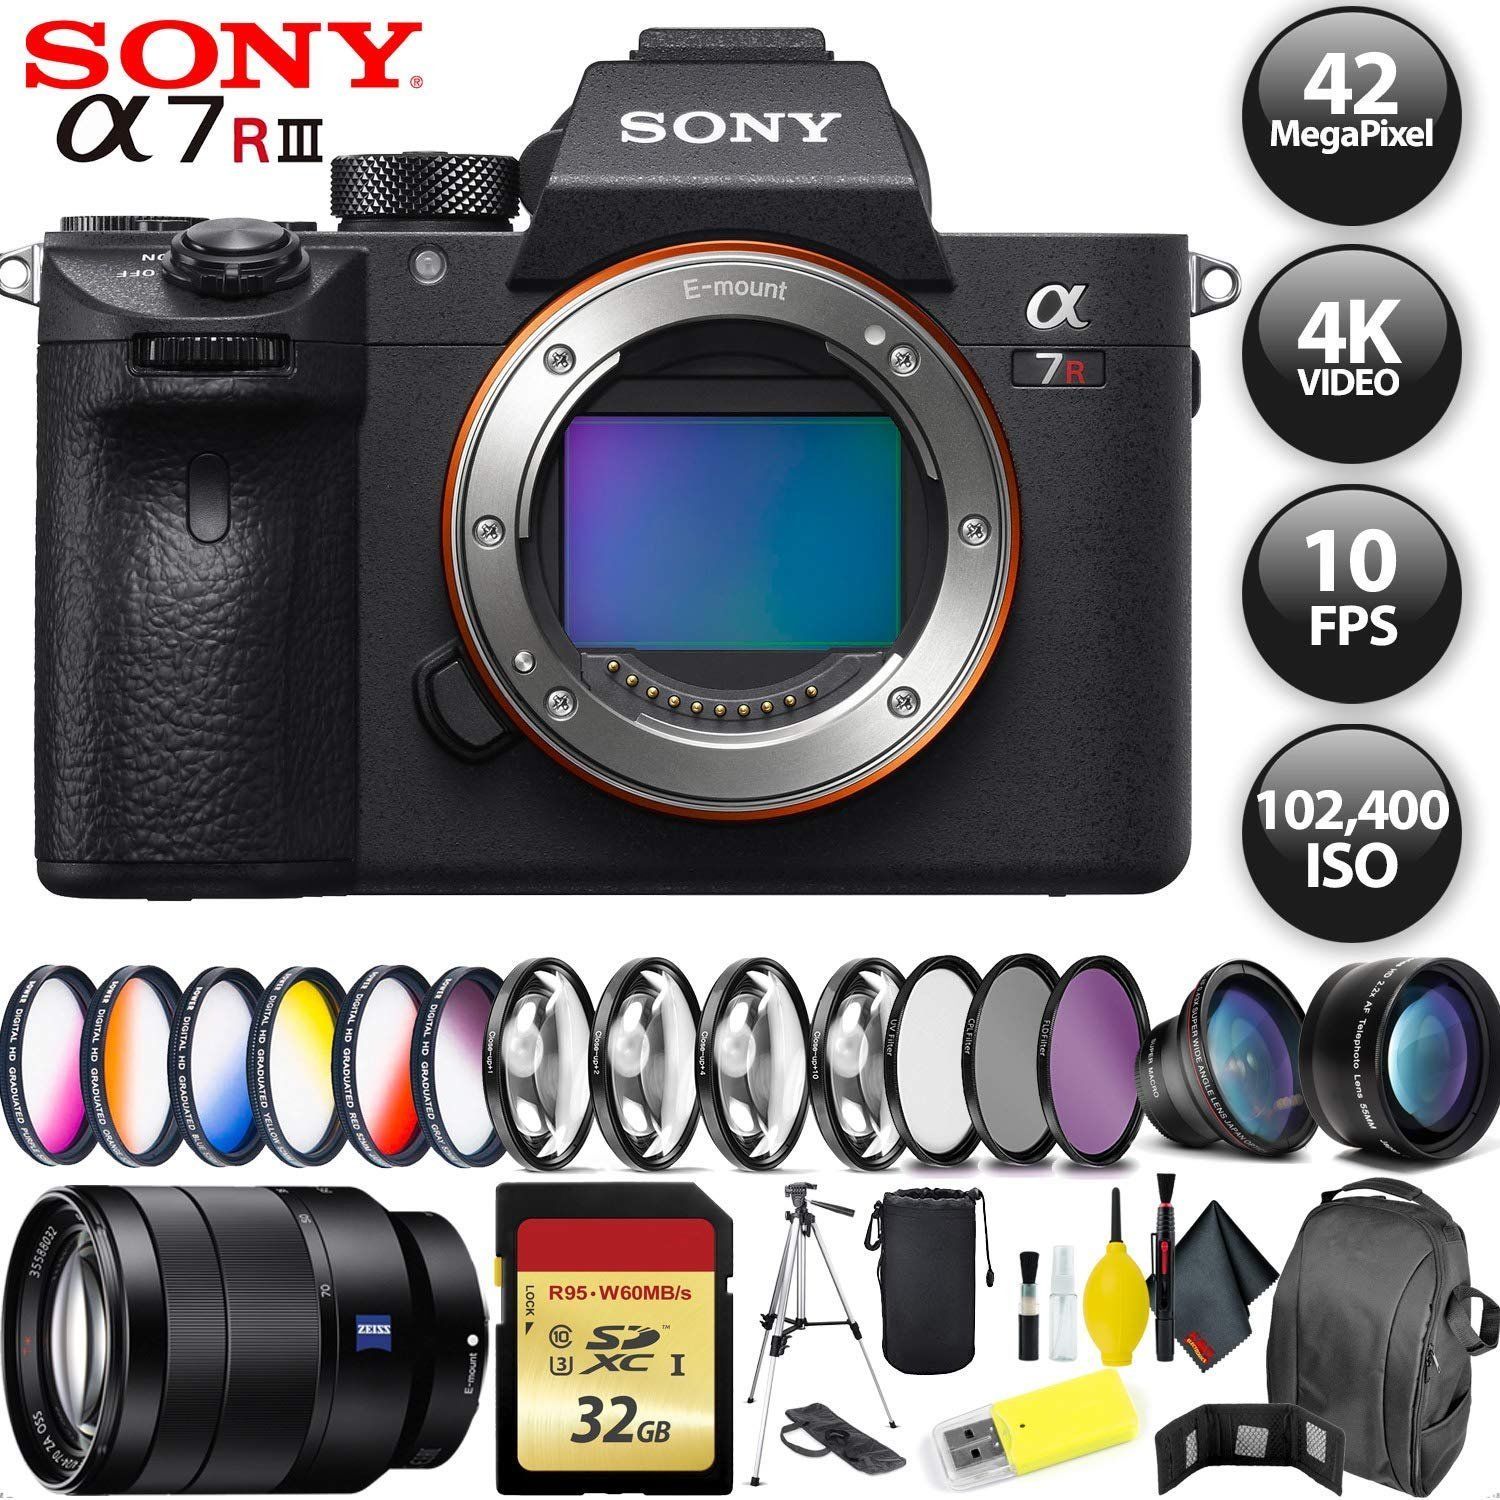 Sony Alpha a7R III Mirrorless Digital Camera + 64GB Memory Card + Sony FE 70-200mm Lens